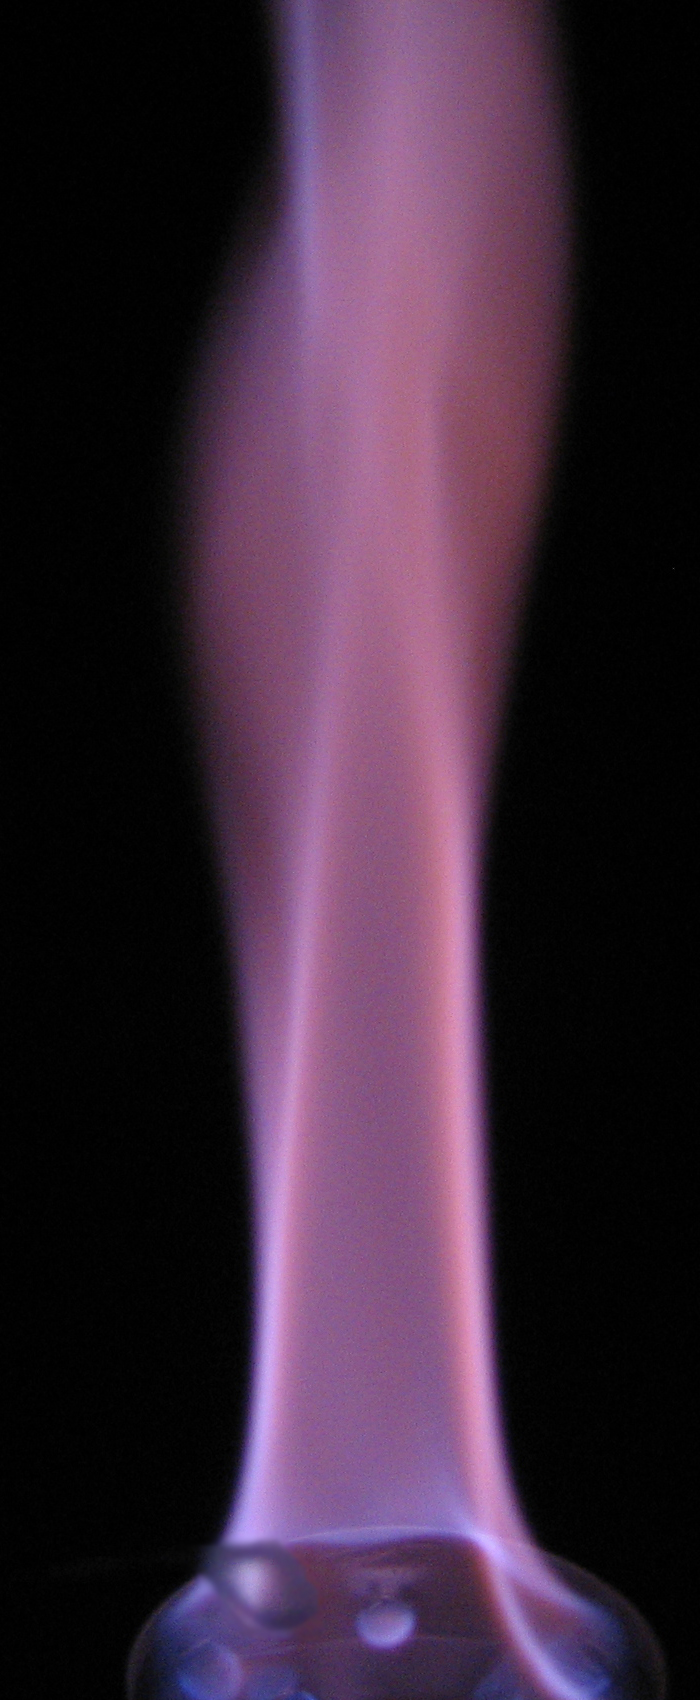 Соли калия окрашивают пламя в фиолетовый цвет